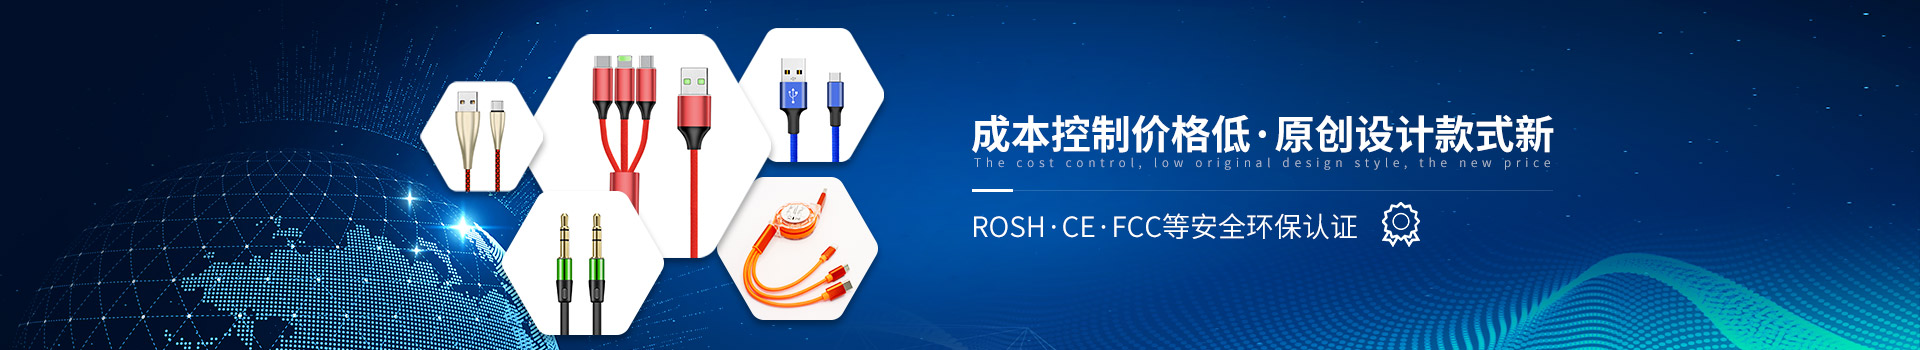 蓝狮荣获ROSH/CE/FCC等安全环保认证